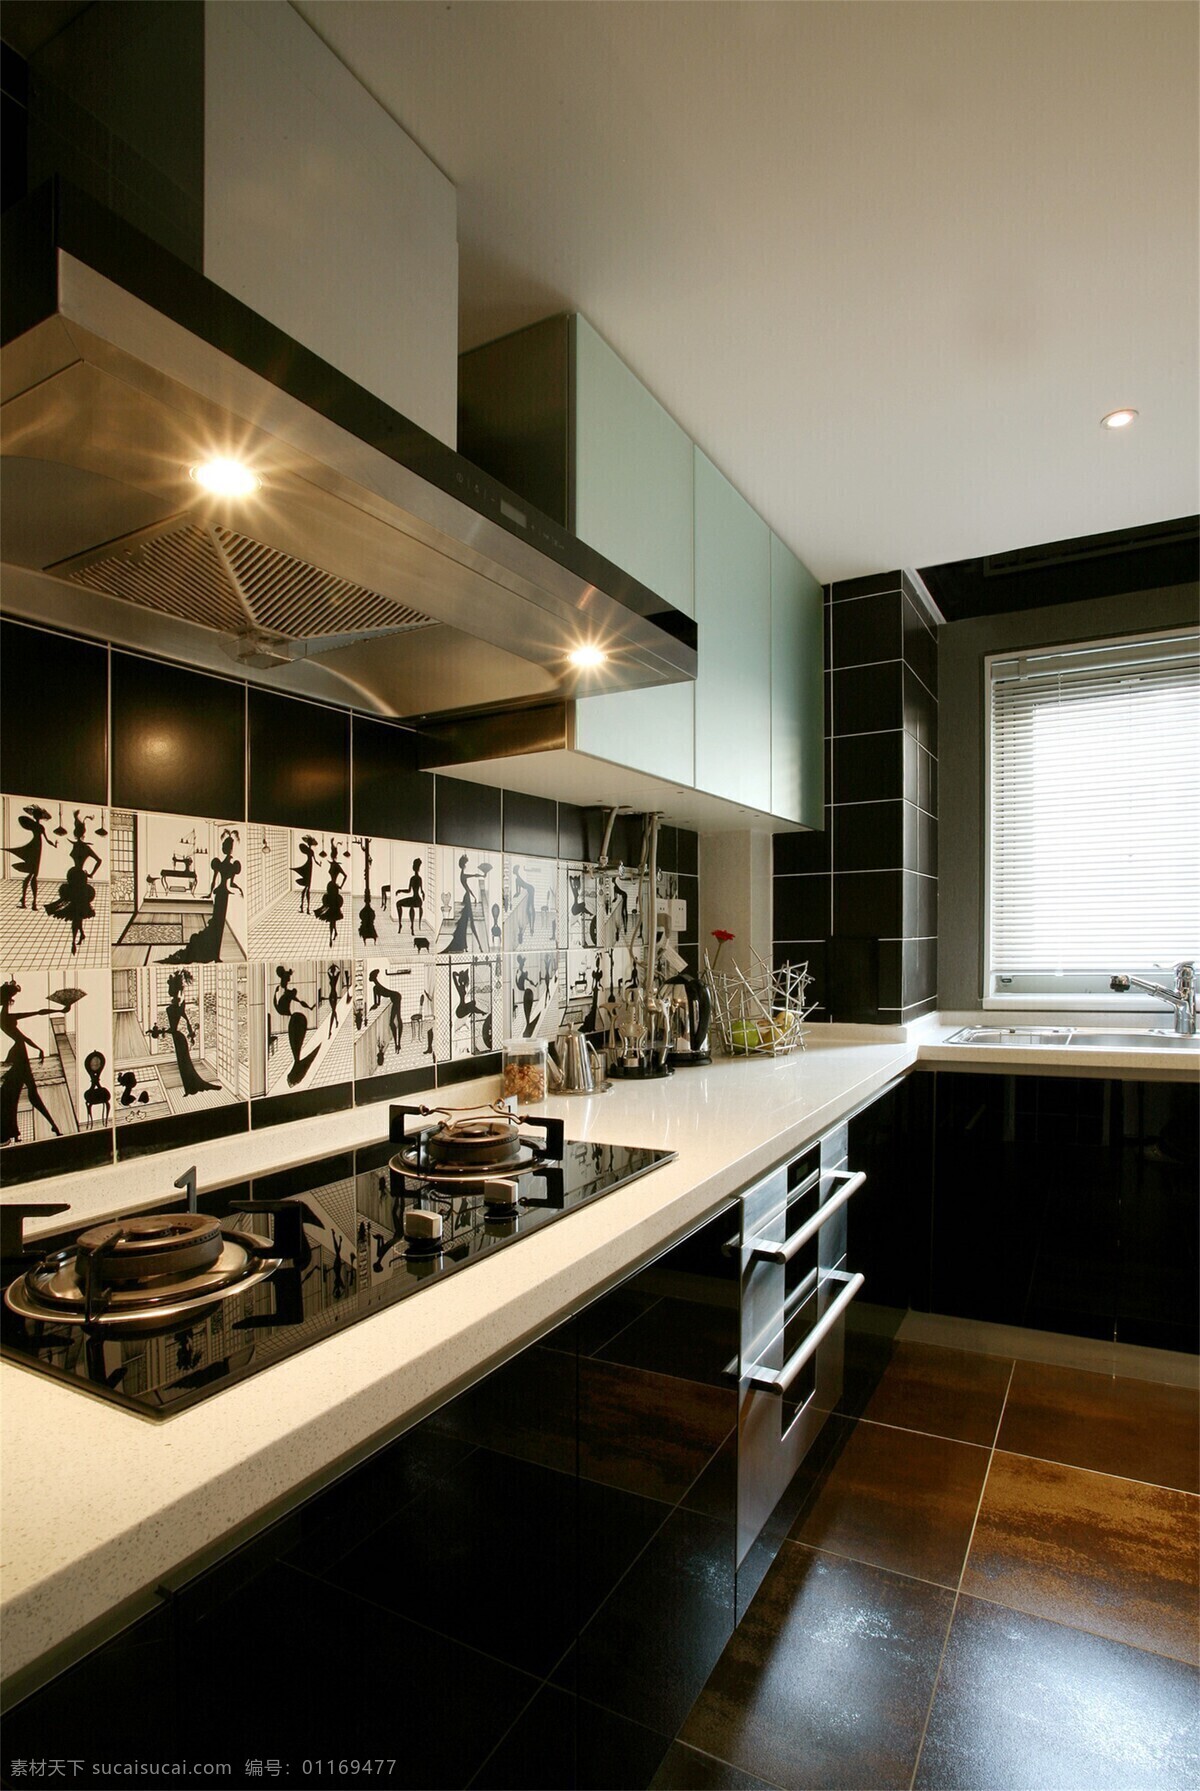 抽油烟机 厨房 高清大图 黑白涂鸦 木质地板 室内设计 效果图 艺术效果 灶台 艺术 风格 装修